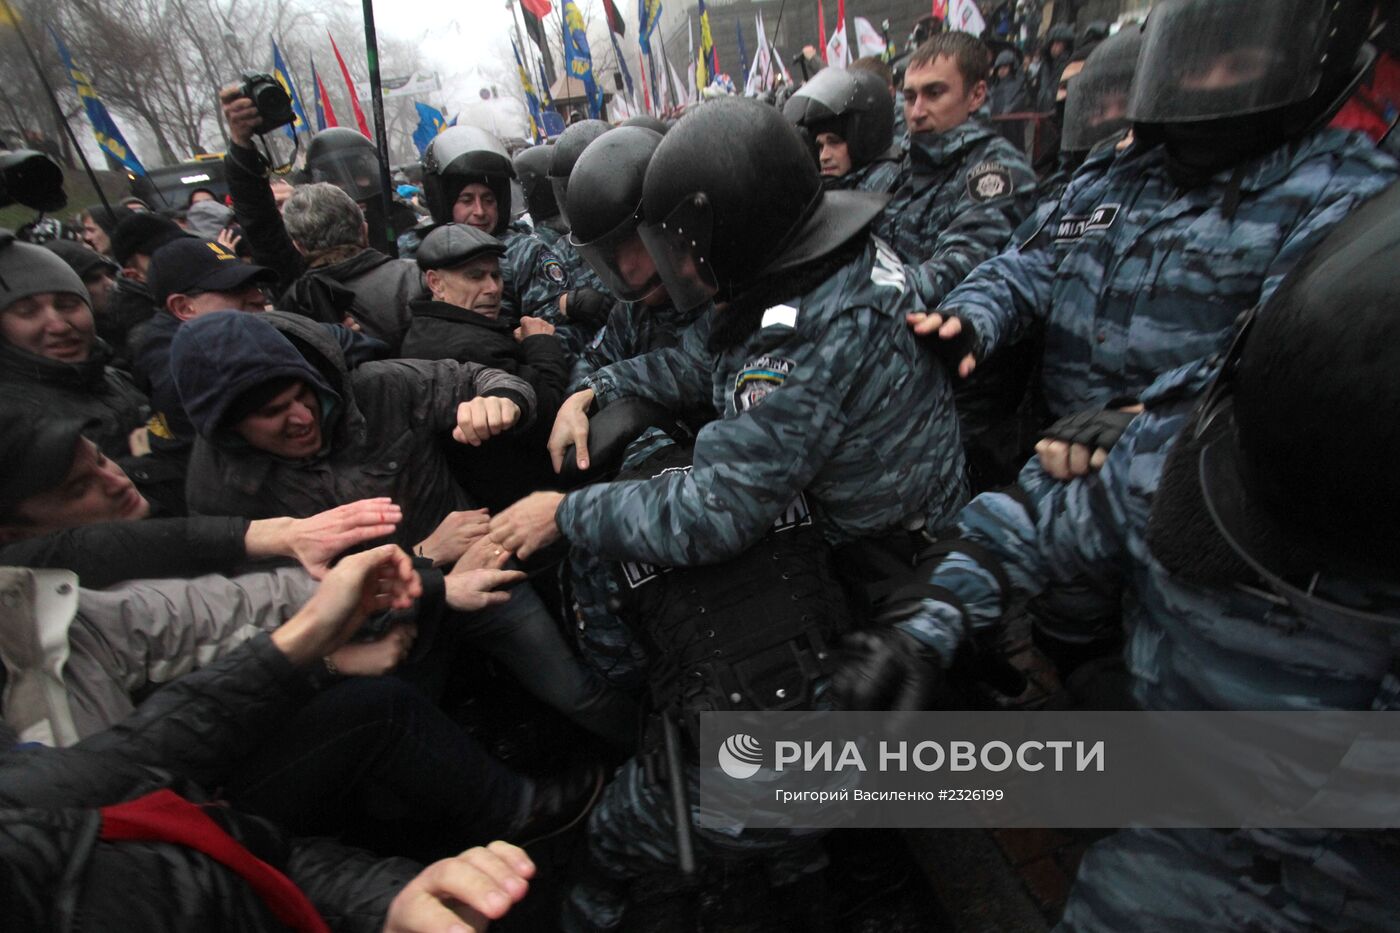 Столкновения сторонников евроинтеграции с милицией в Киеве